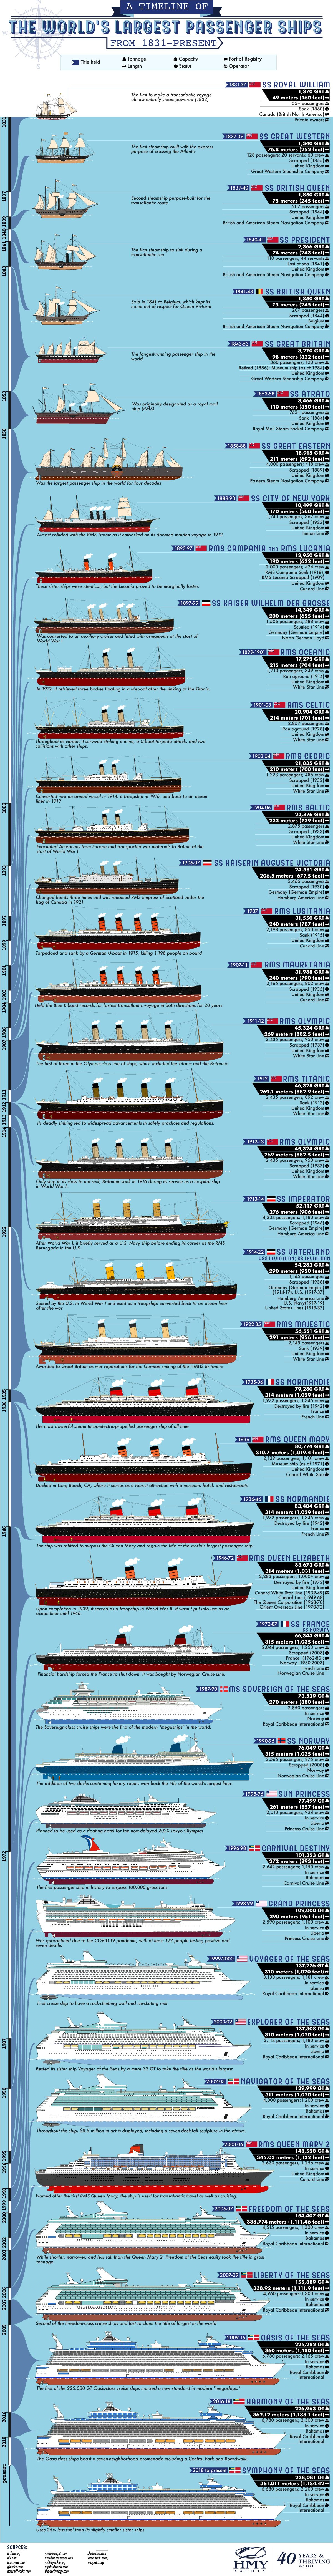 Los buques de pasajeros más grandes del mundo